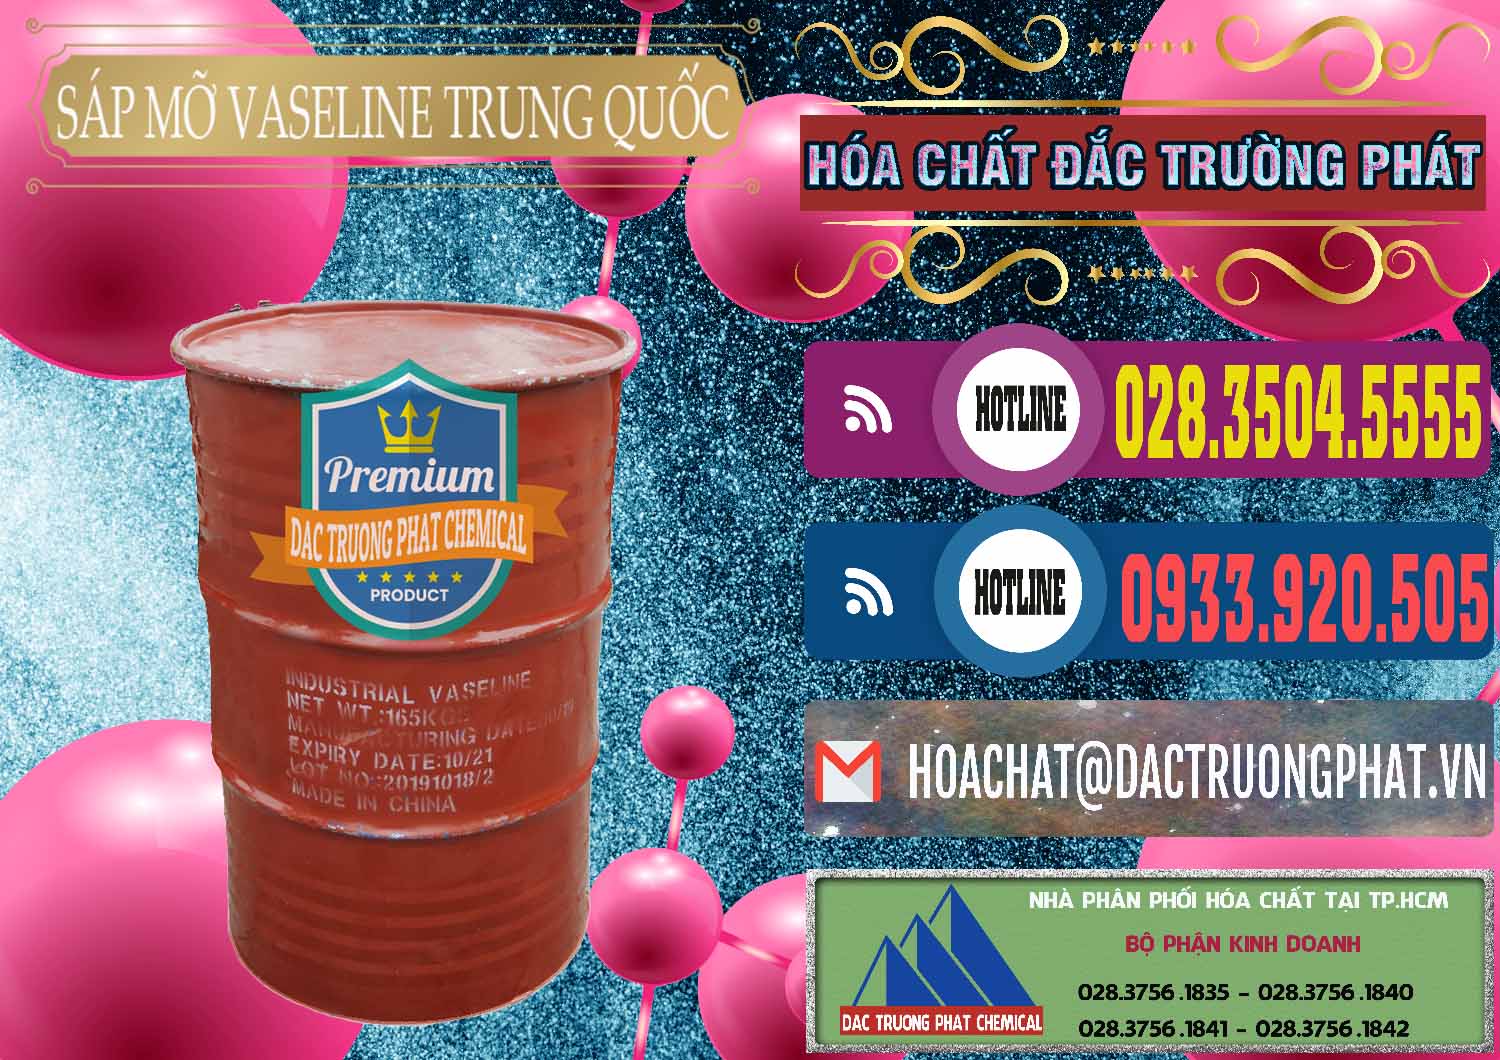 Cty chuyên cung cấp _ bán Sáp Mỡ Vaseline Trung Quốc China - 0122 - Công ty chuyên bán _ phân phối hóa chất tại TP.HCM - muabanhoachat.com.vn